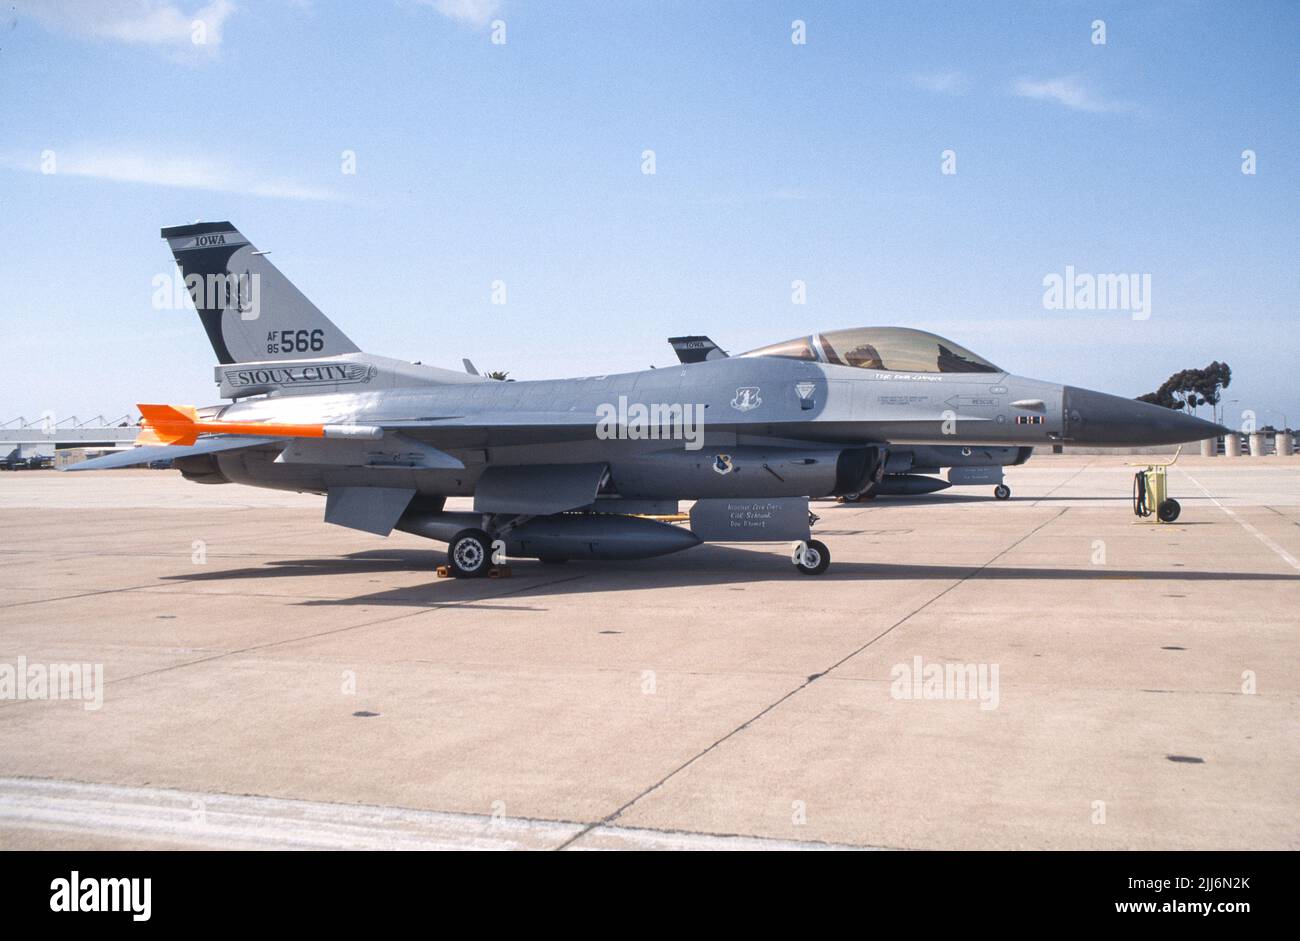 La Dinámica General de la Fuerza Aérea de los Estados Unidos F-16 luchando contra el halcón en el asfalto del MCAS Miramar en San Diego, California Foto de stock